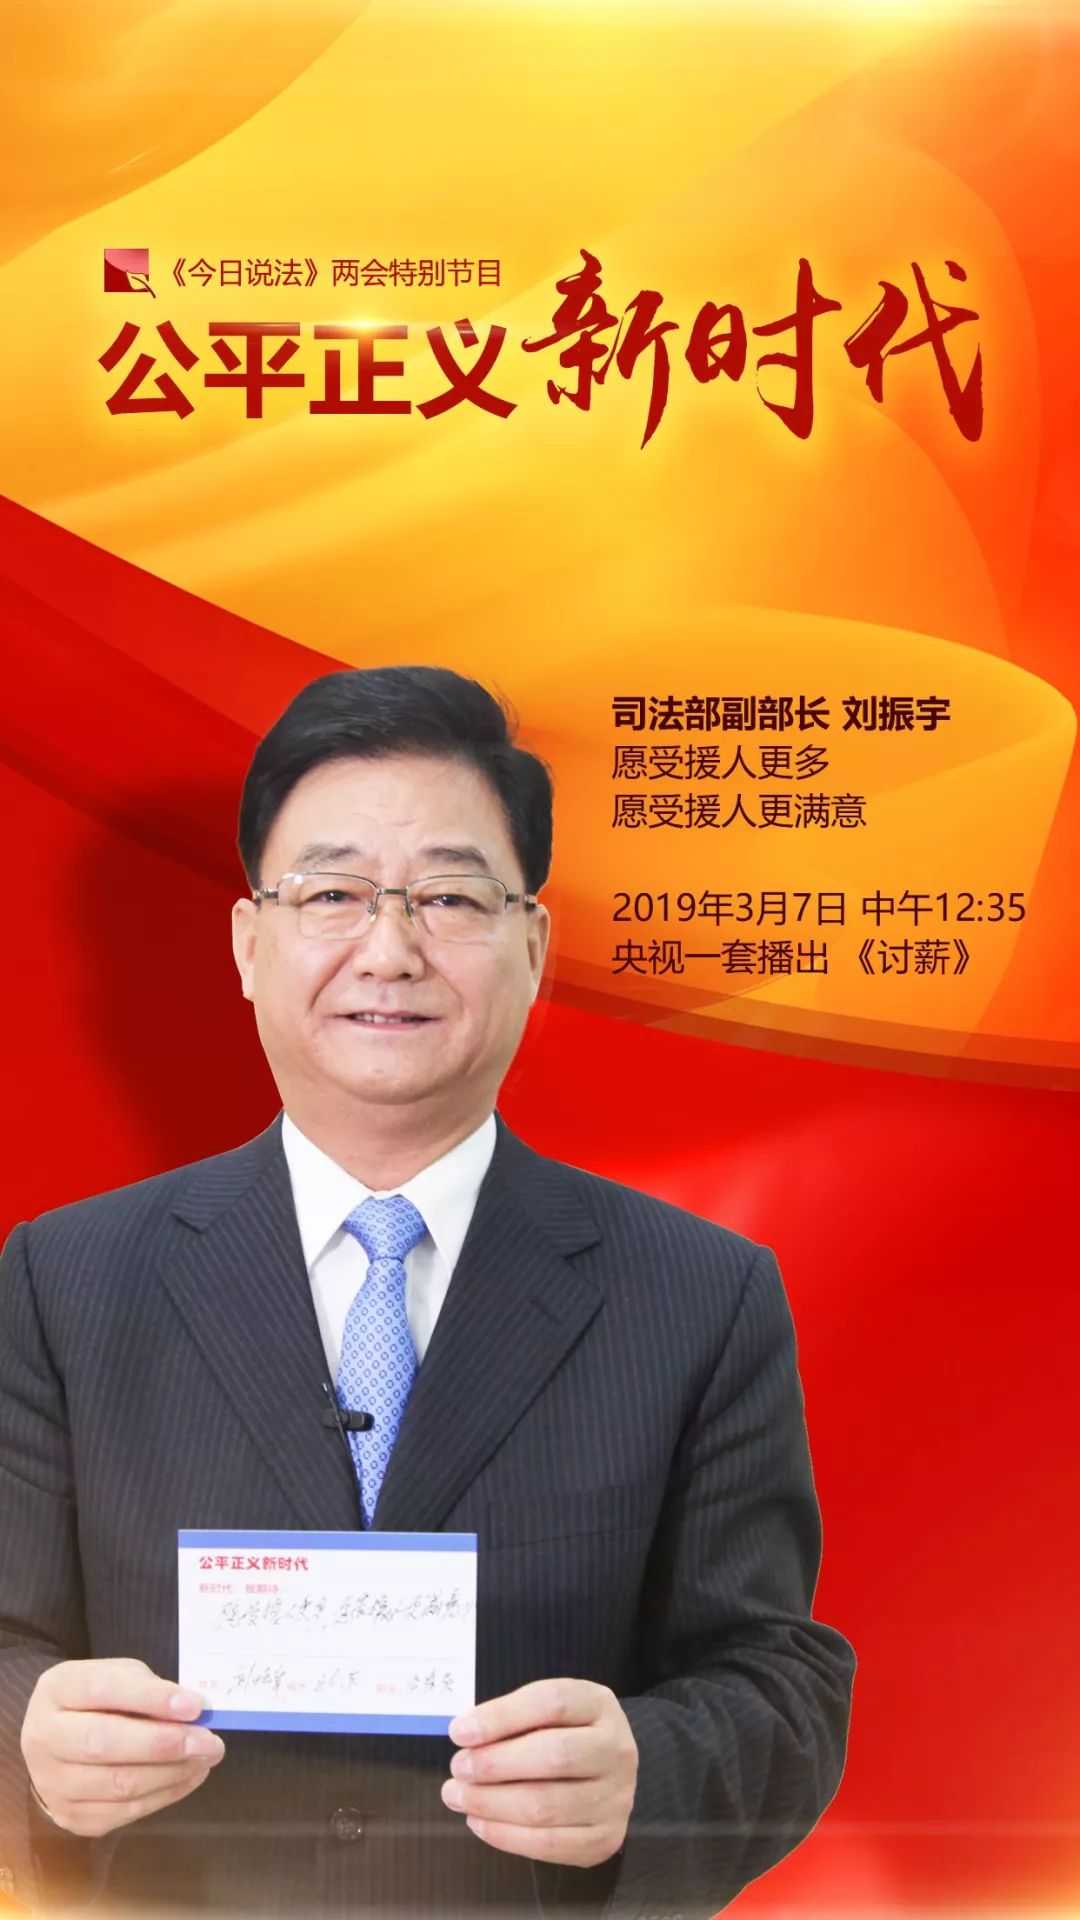 关注全国政协委员司法部副部长刘振宇愿受援人更多更满意